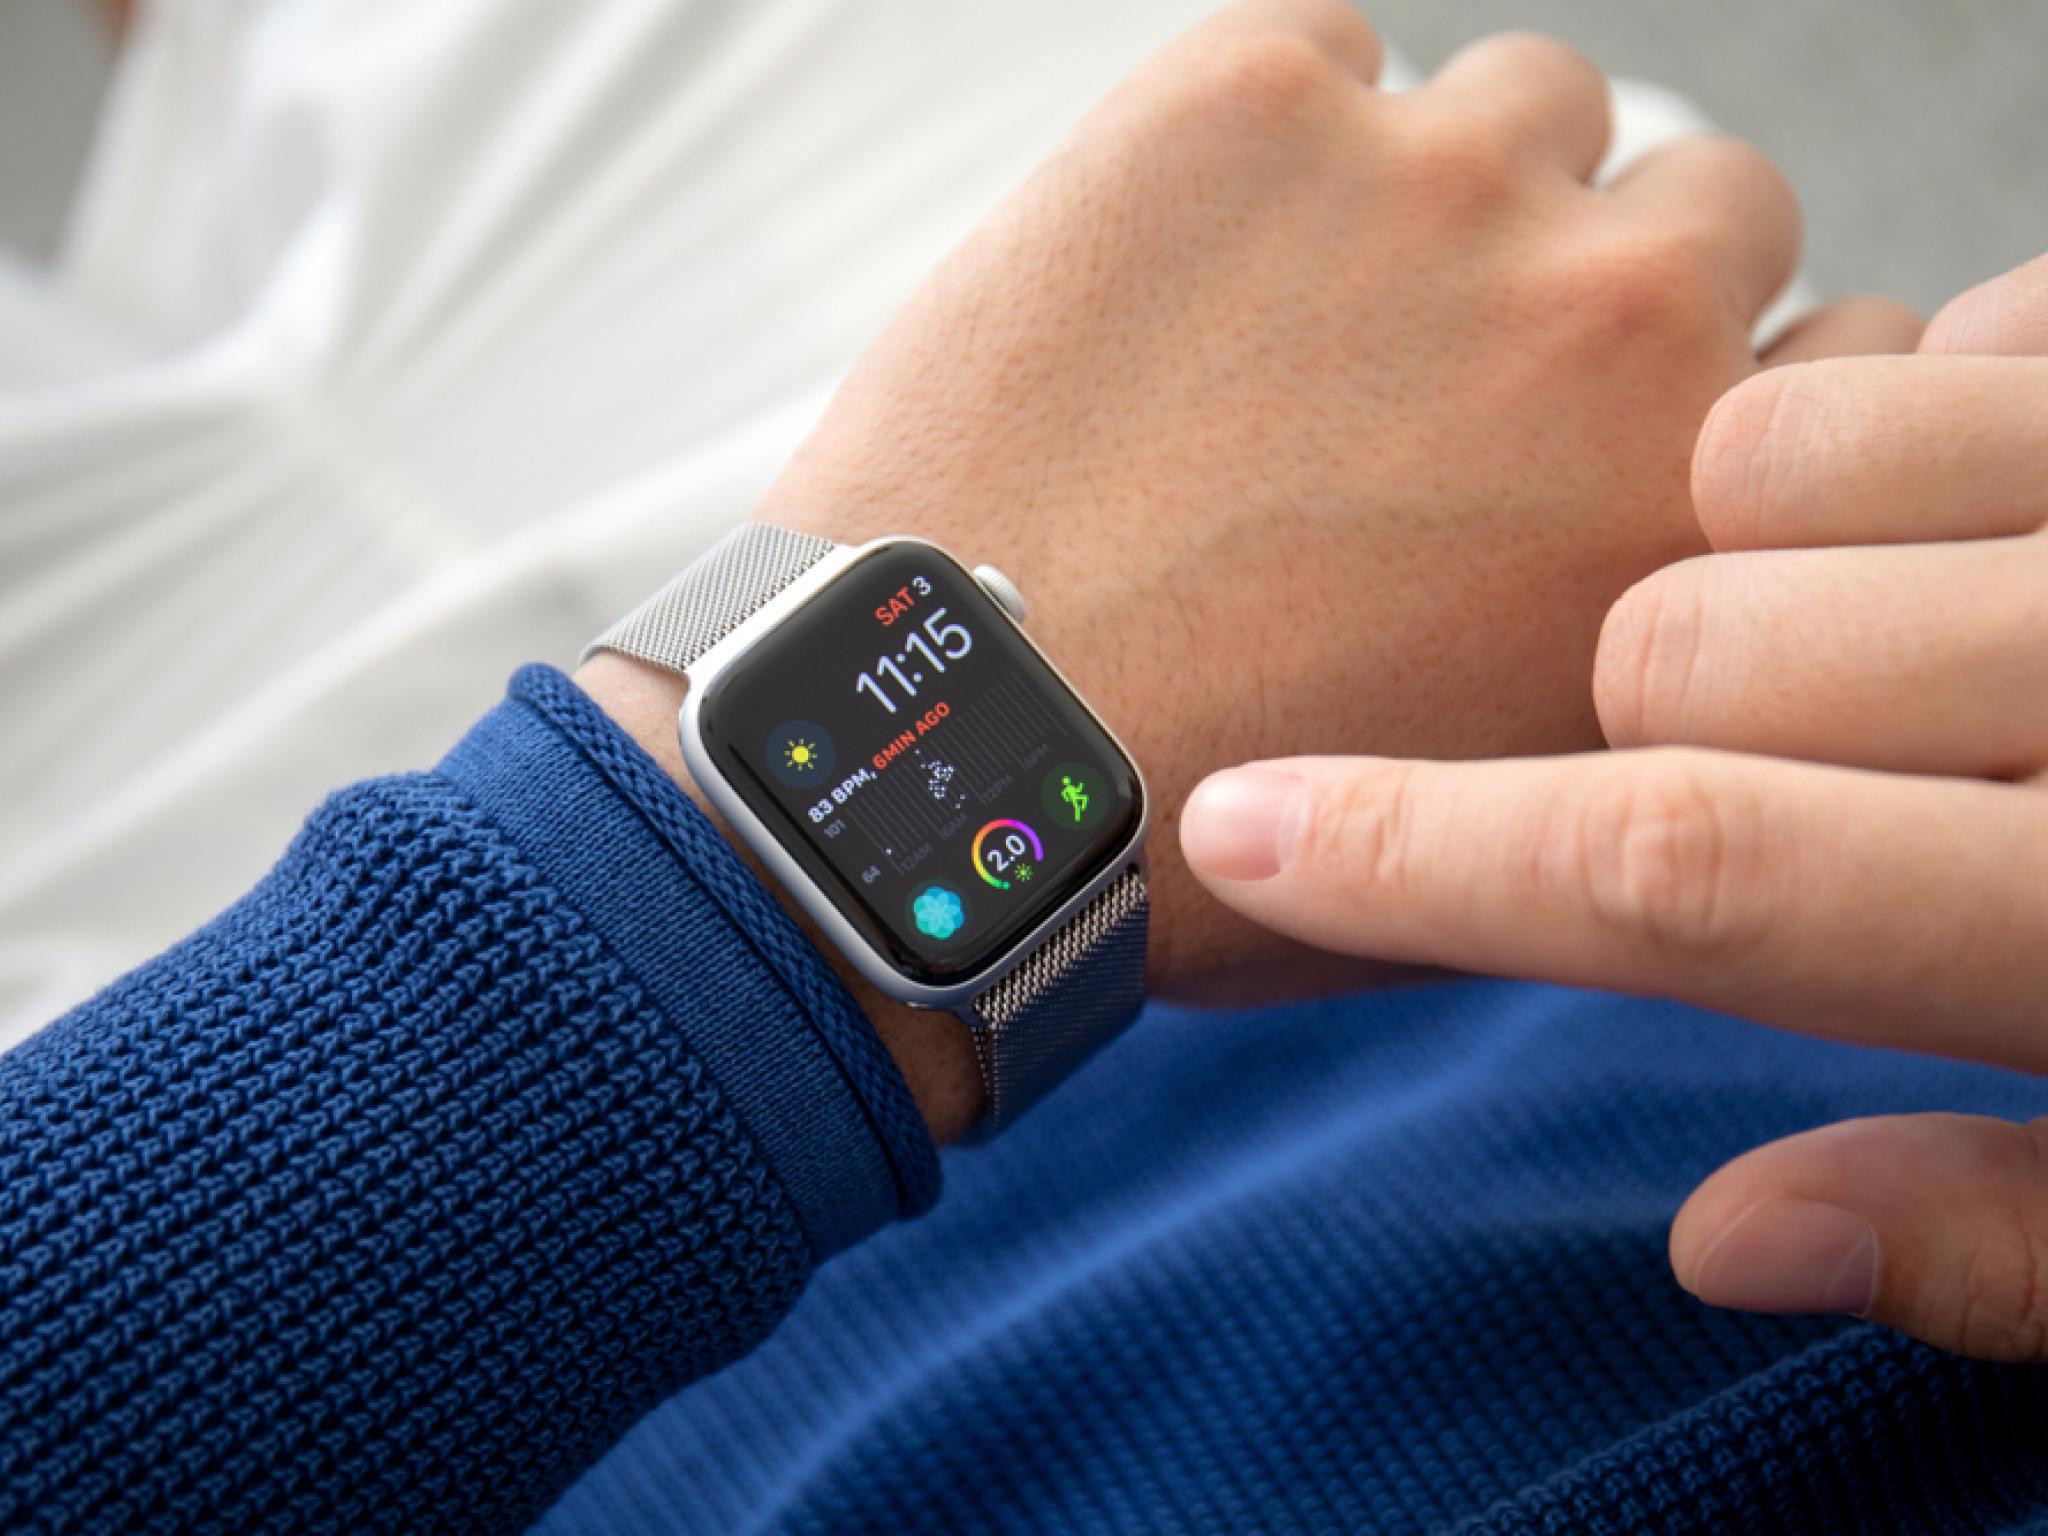 Je n'aurais jamais pensé avoir besoin de cette fonction : L'Apple Watch sauve la vie lors d'un accident de la route - Goliaths actualités boursière